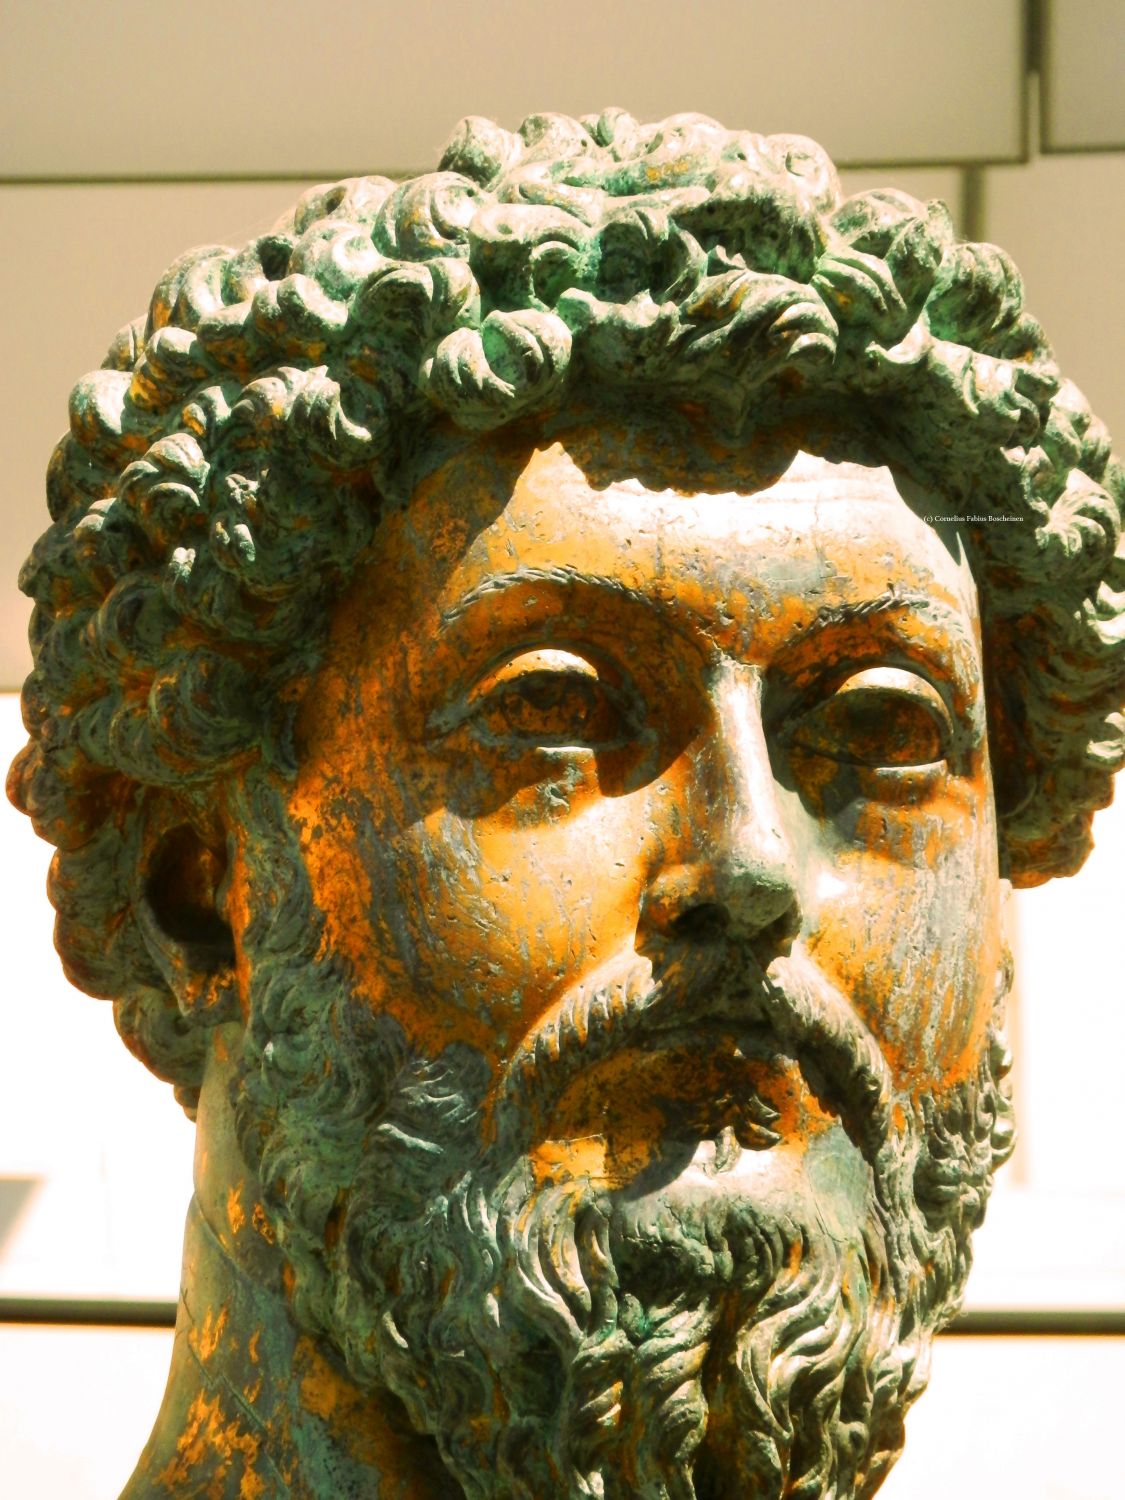 Die gewaltige Reiterstatue des römischen Kaisers Marcus Aurelius.